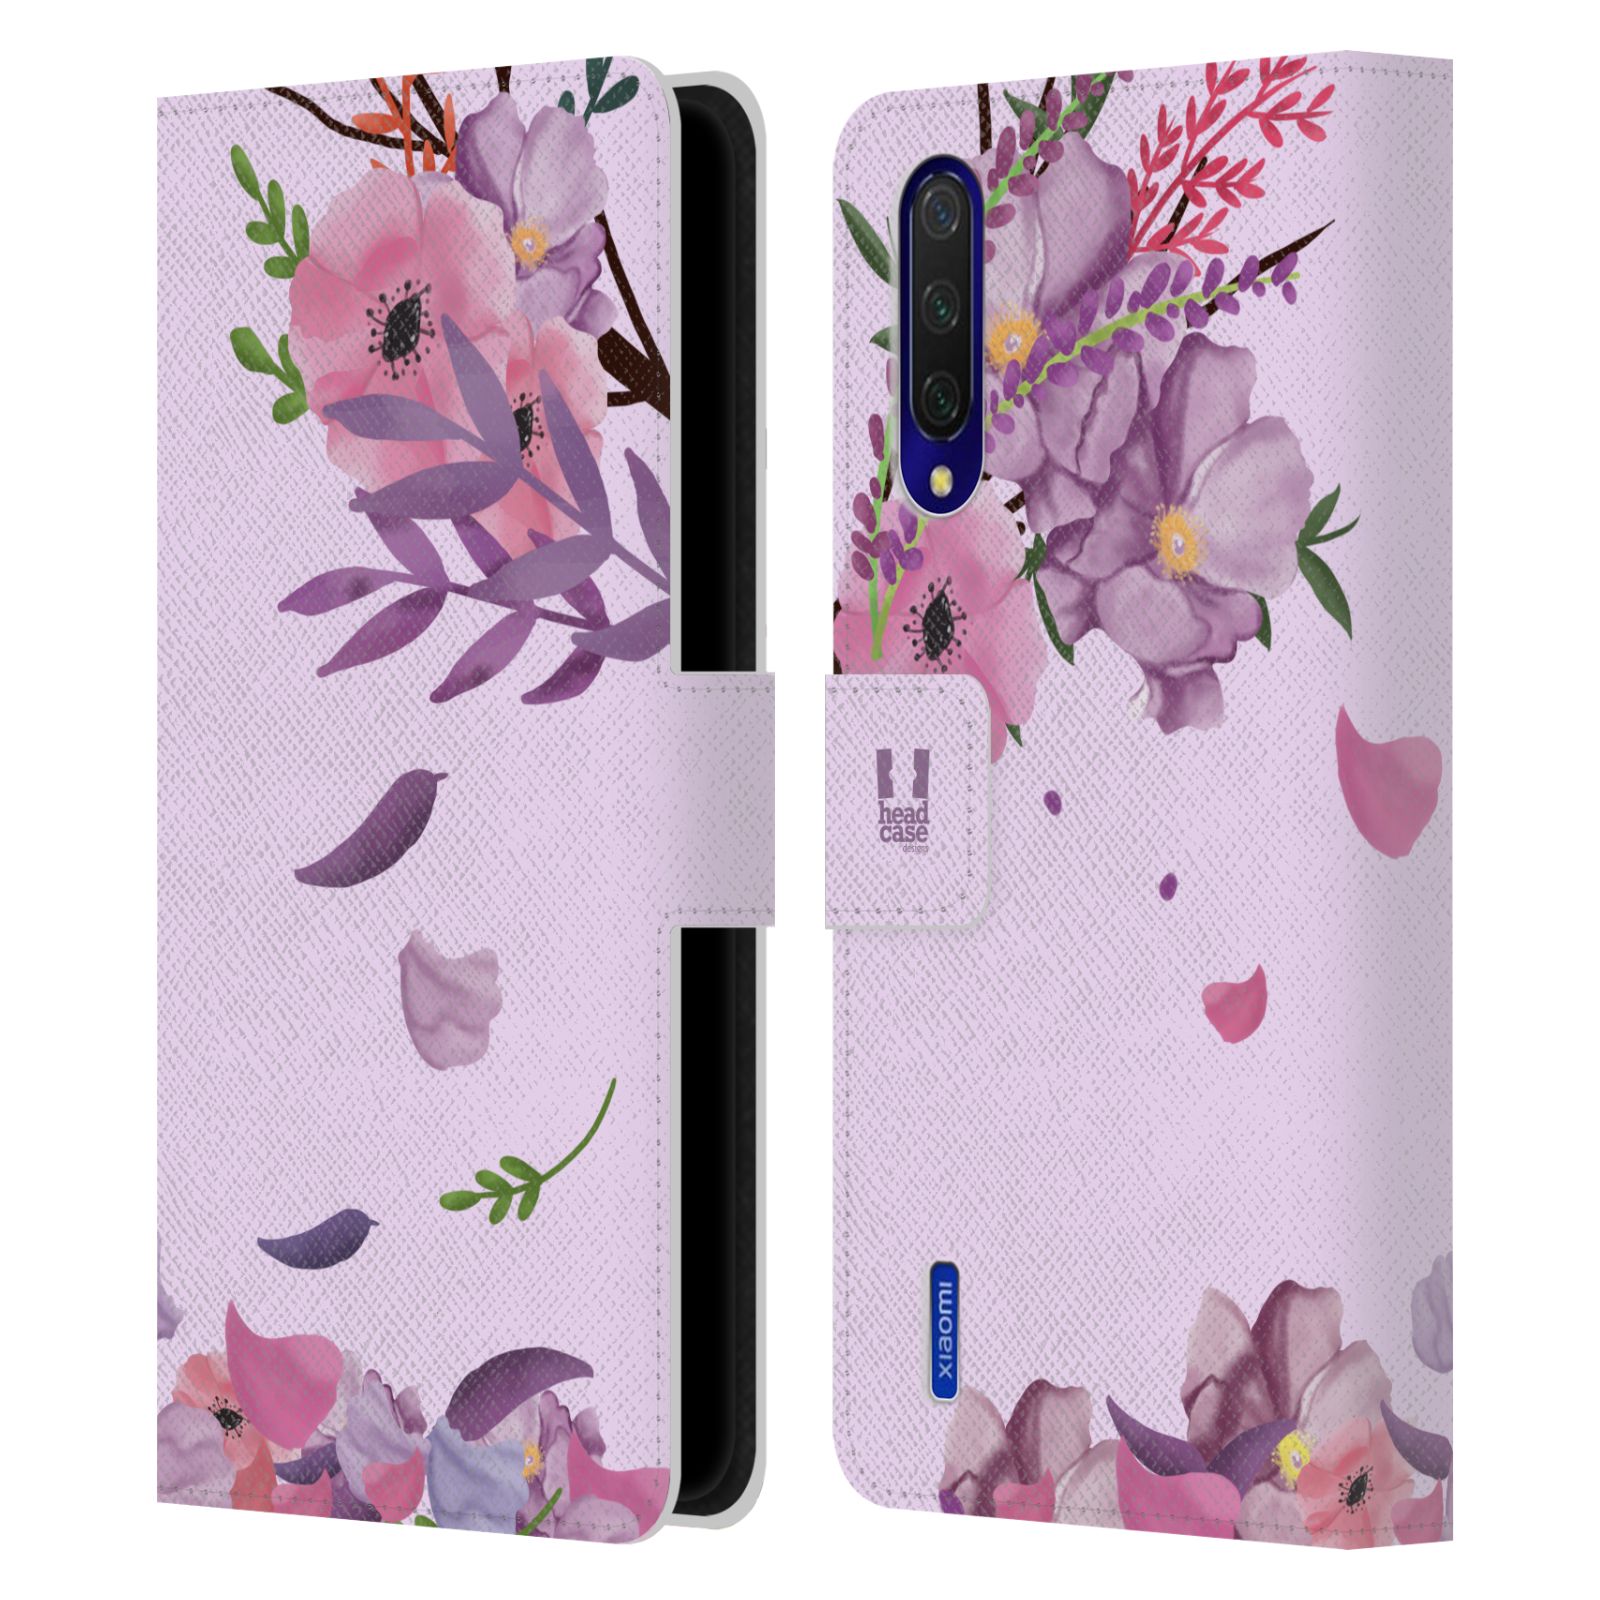 Pouzdro na mobil Xiaomi Mi 9 LITE  - HEAD CASE - Rozkvetlé růže a listy růžová